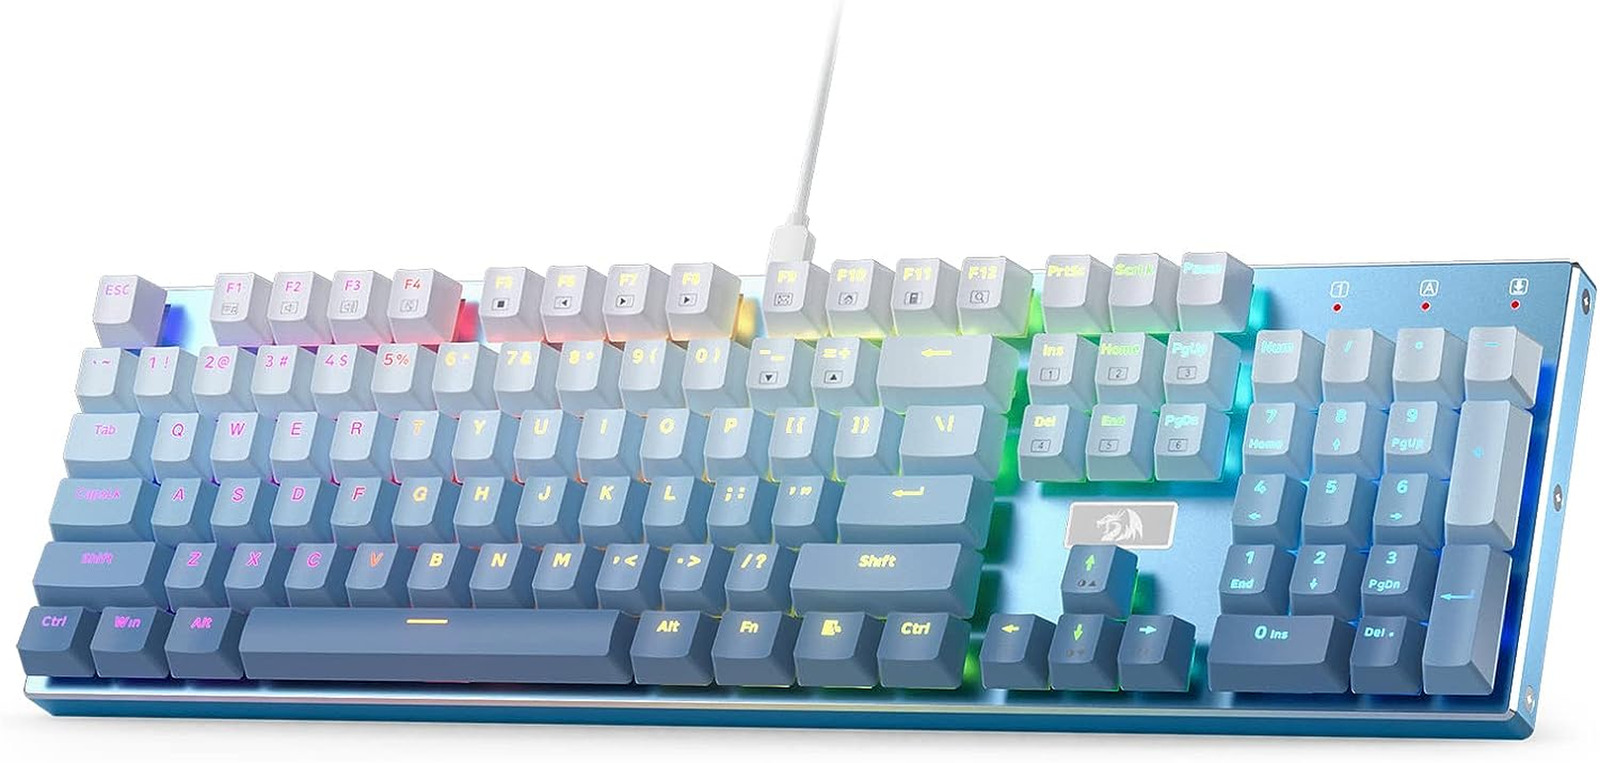 K556 SE RGB LED Backlit Wired Mechanical Gaming Keyboard, Aluminum Base, 104 Key